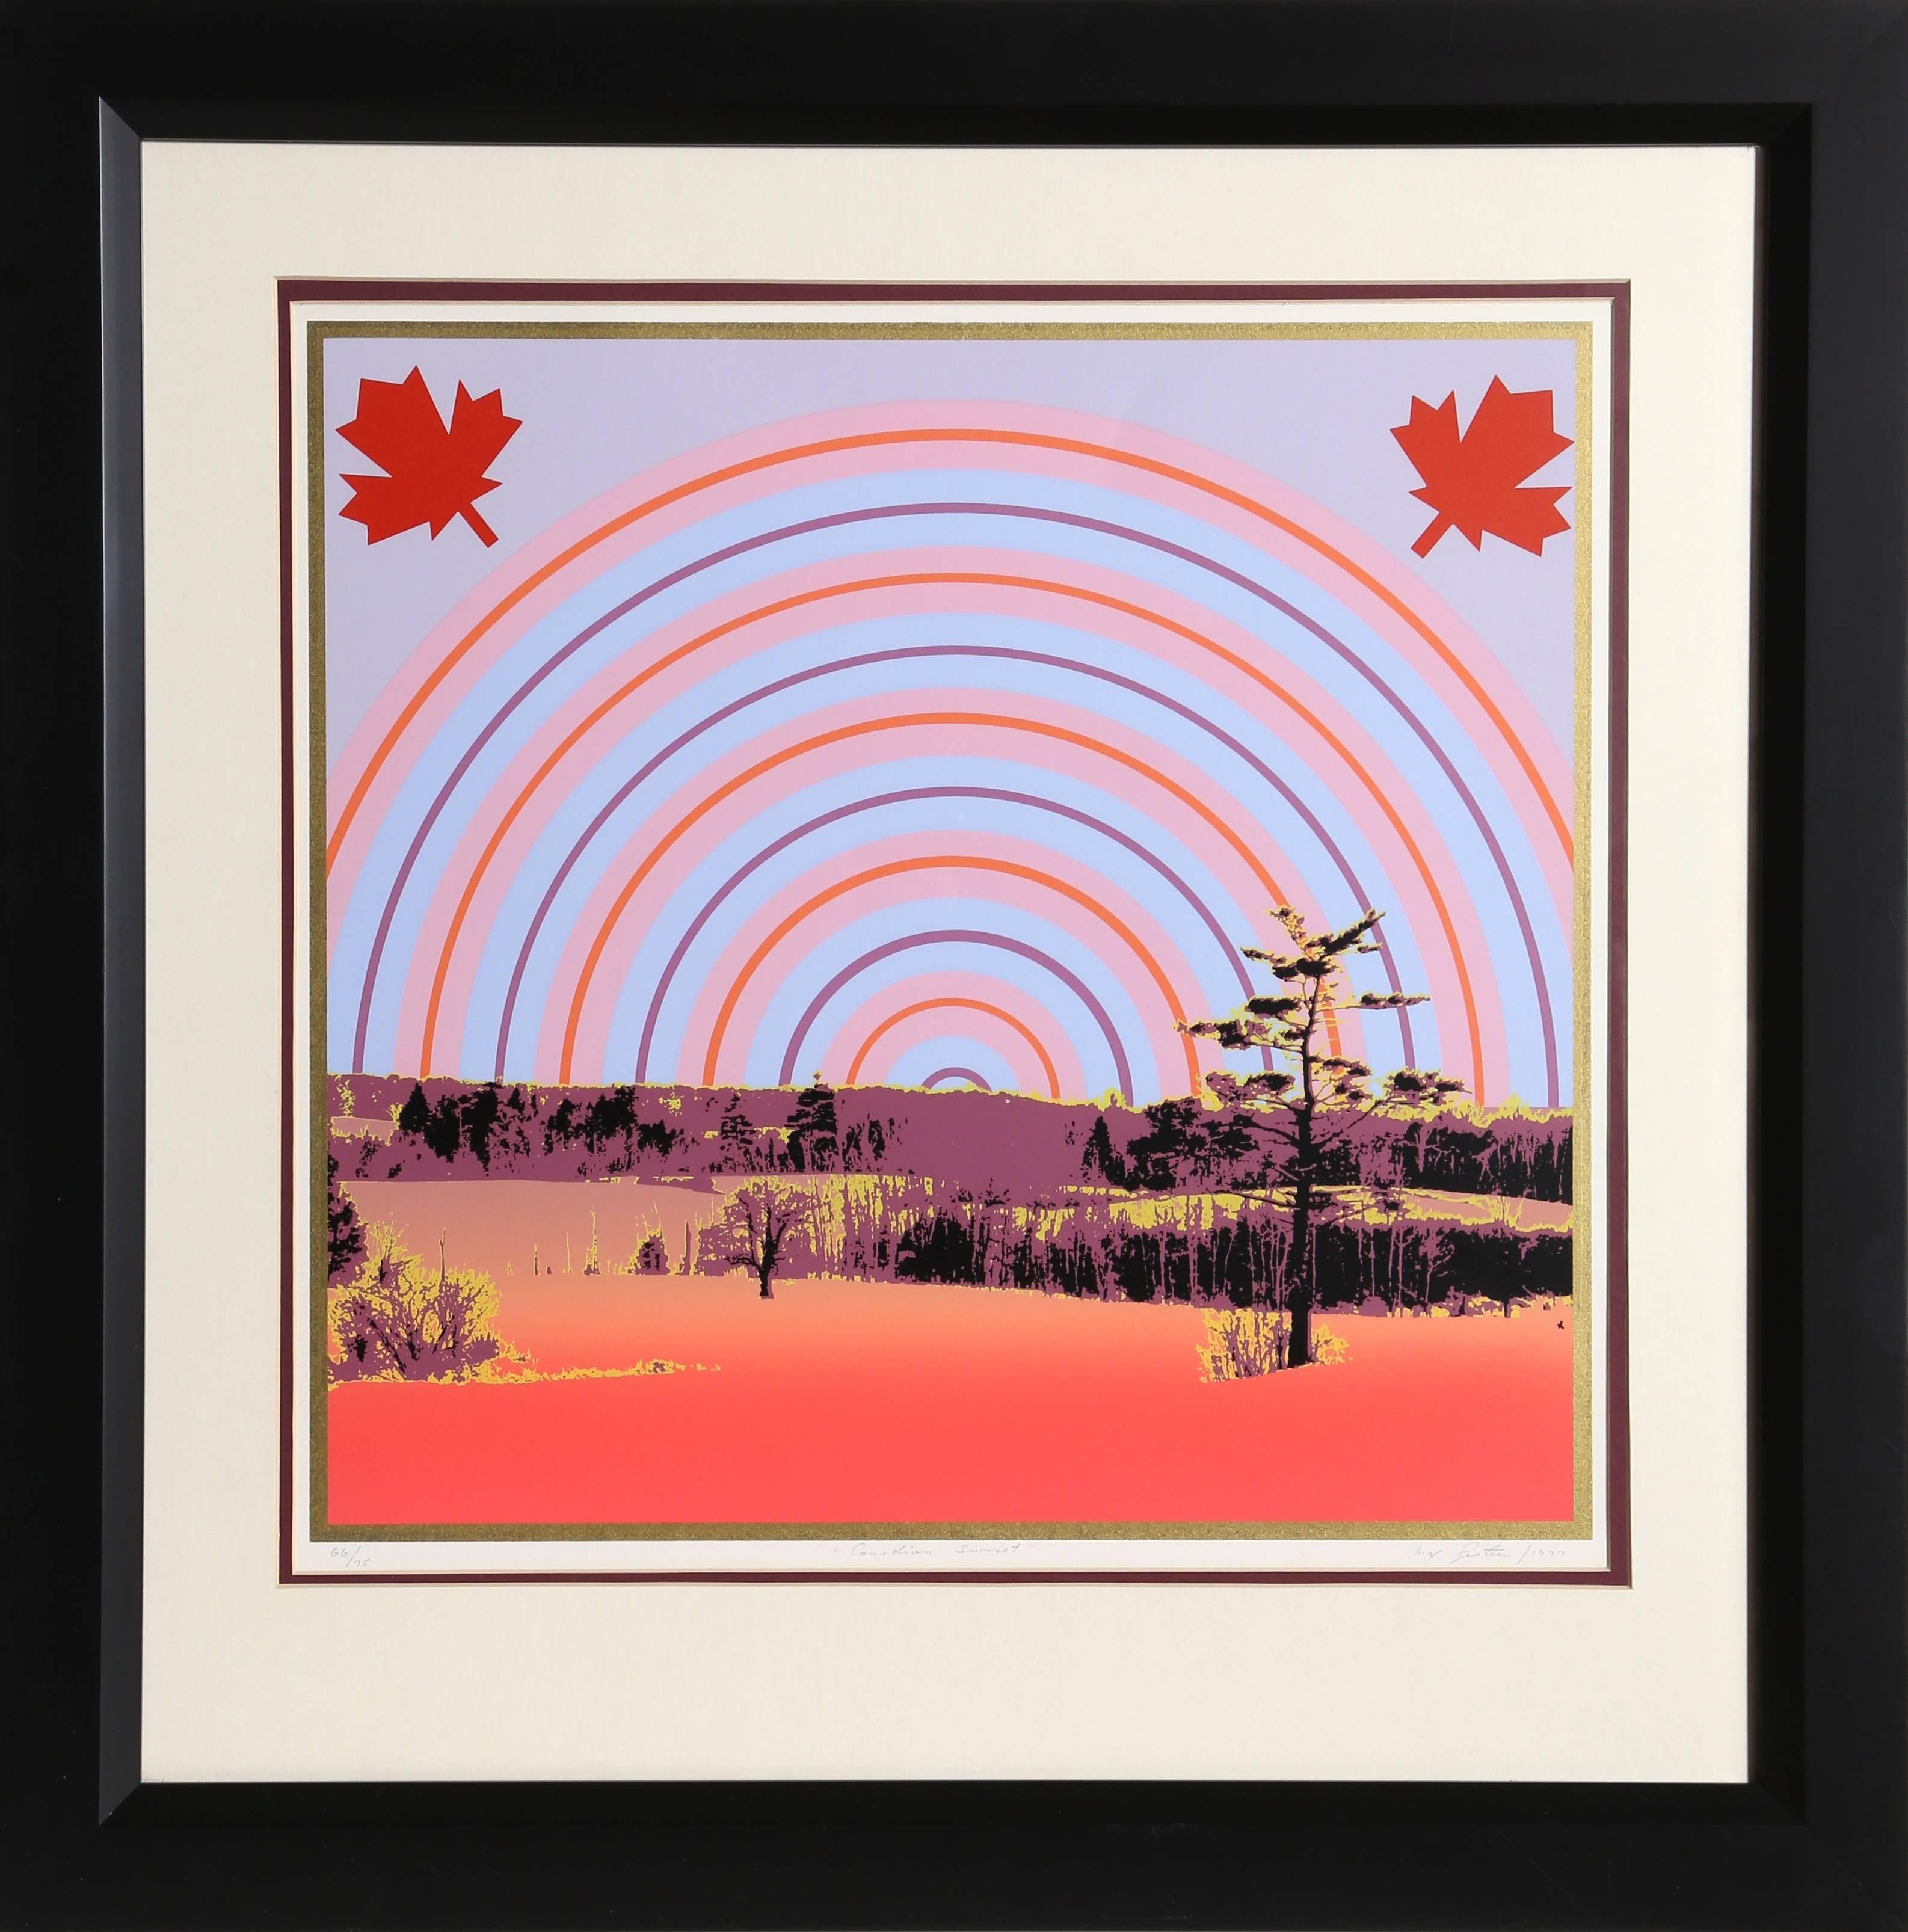 Künstler:  Max Epstein, Kanadier (1932 - 2002)
Titel:  Kanadischer Sonnenuntergang
Jahr:  1977
Medium:  Siebdruck, signiert und nummeriert mit Bleistift
Auflage:  66/75
Bildgröße:  17 x 18 Zoll
Rahmengröße:  27 x 27 Zoll